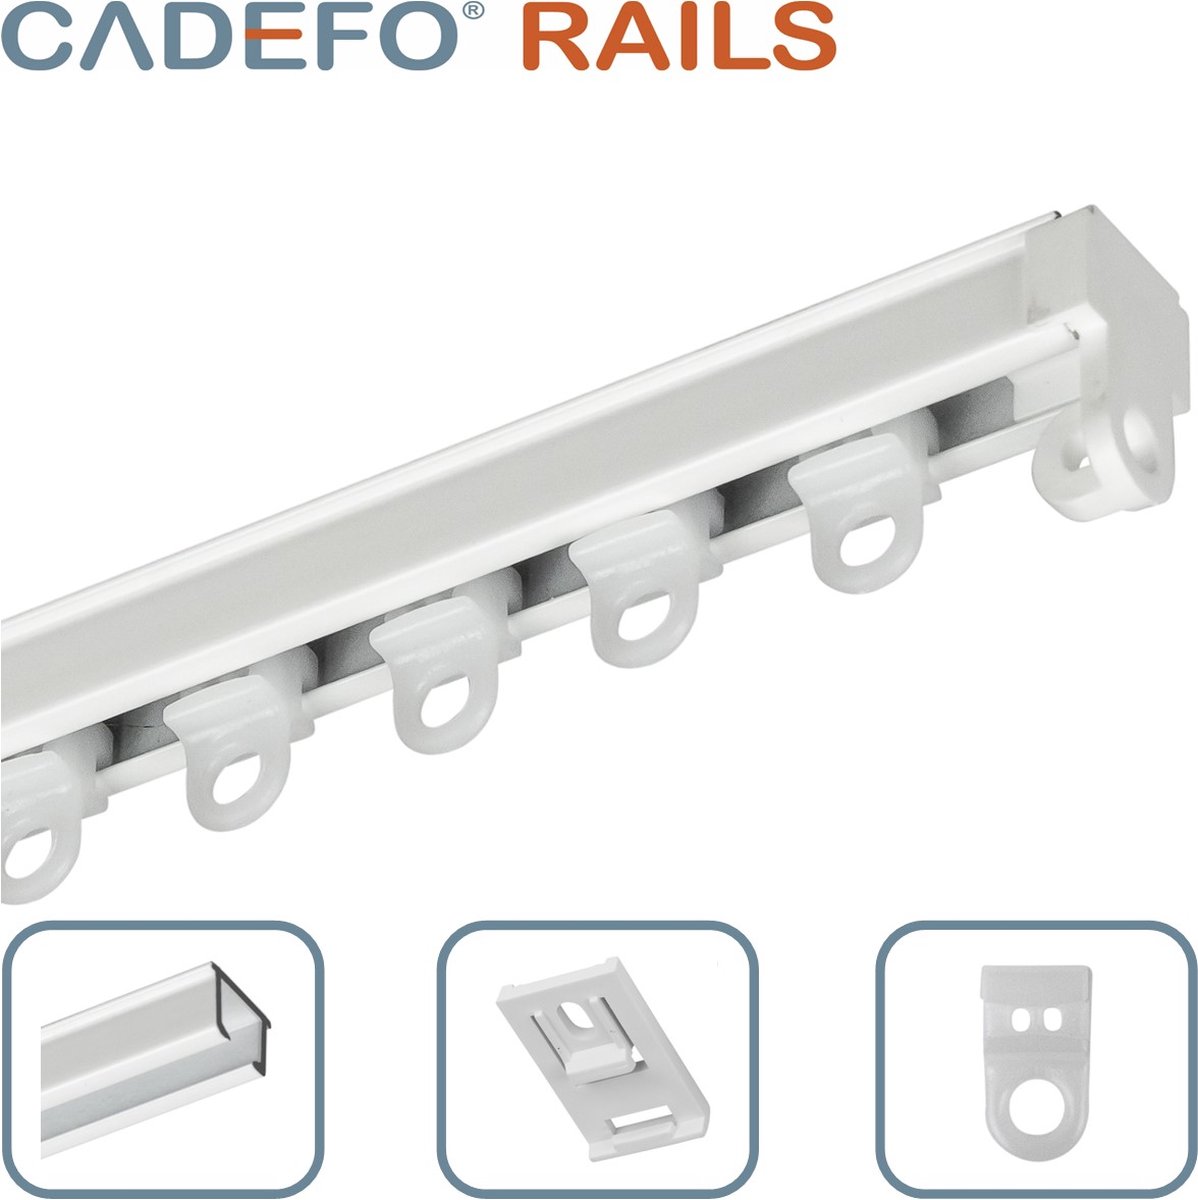 CADEFO RAILS (251 - 300 cm) Gordijnrails - Compleet op maat! - UIT 1 STUK - Leverbaar tot 6 meter - Plafondbevestiging - Lengte 295 cm